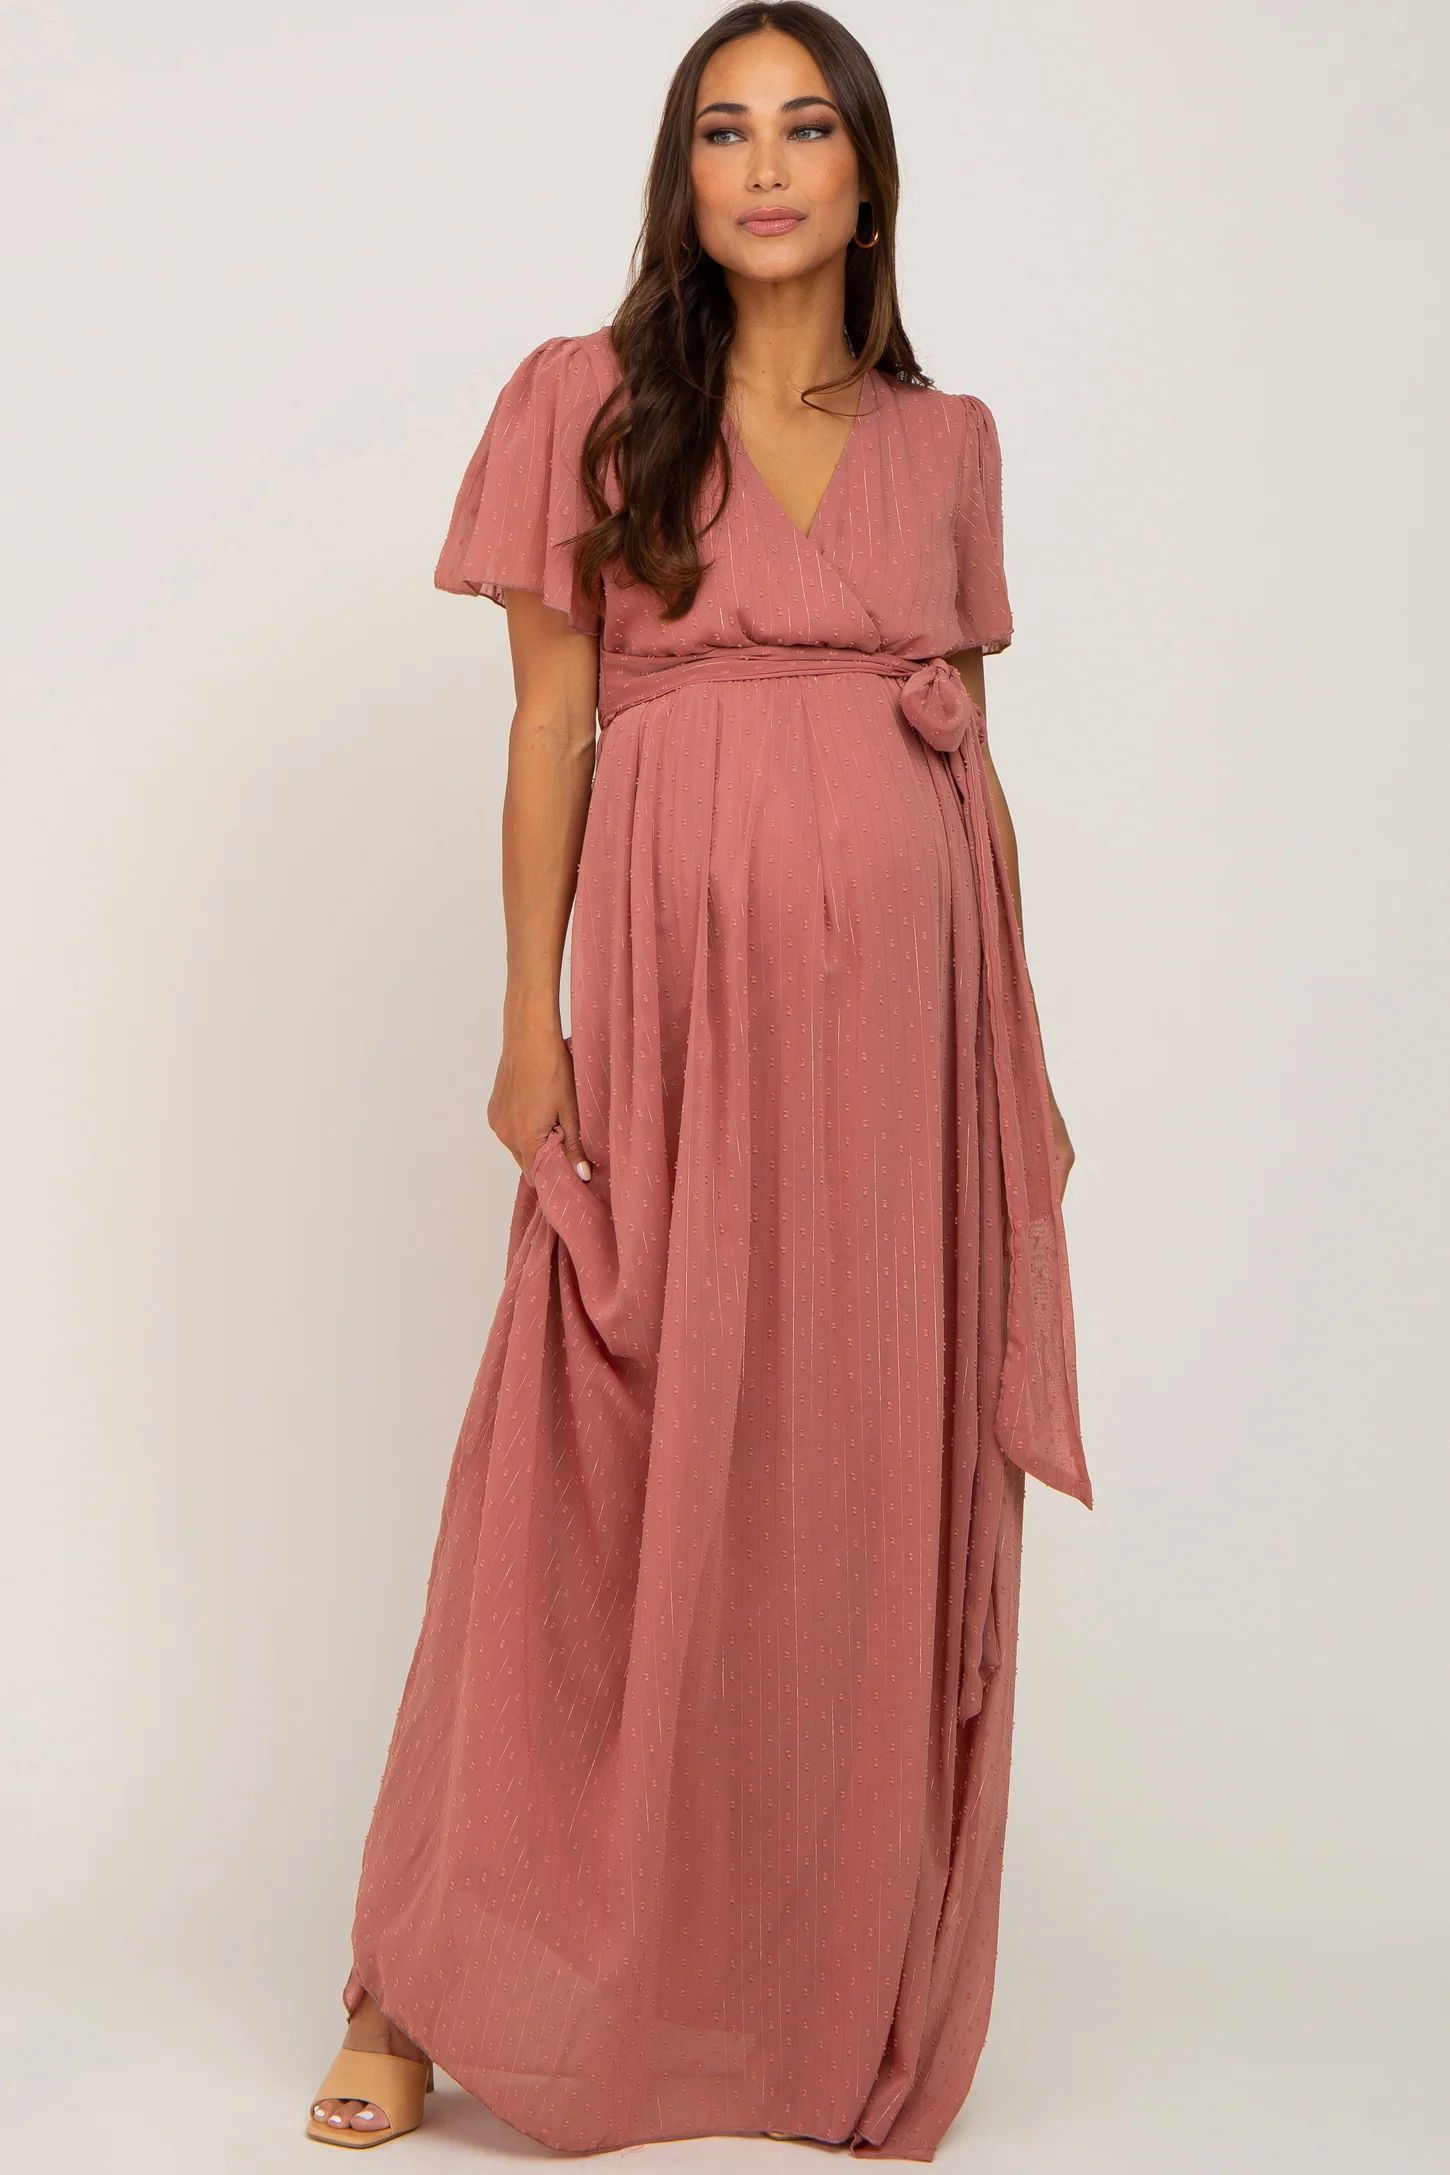 Mauve Swiss Dot Chiffon Maternity Maxi Dress | PinkBlush Maternity